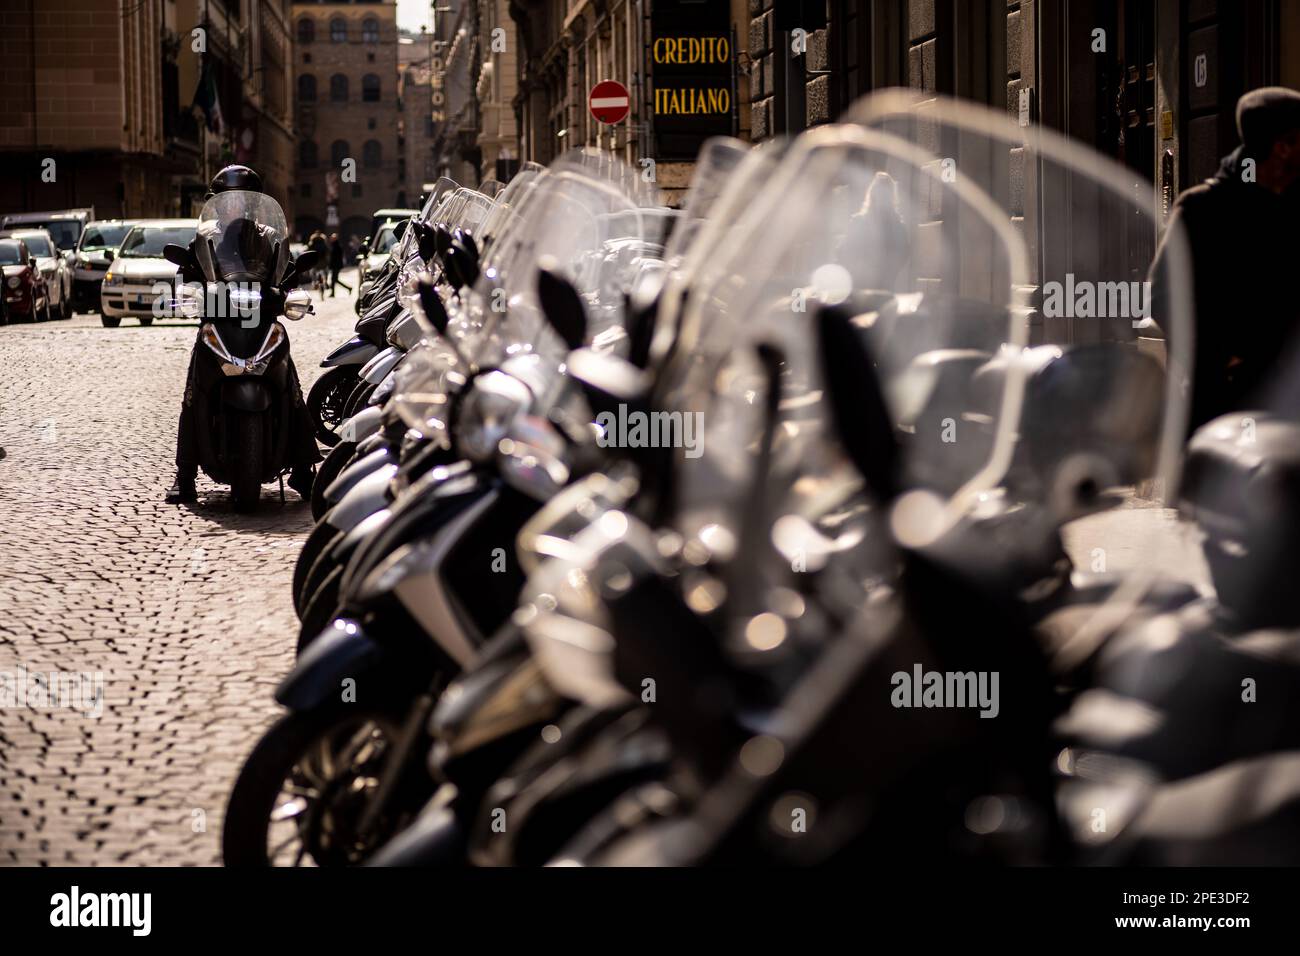 Ciclomotori e scooter per le strade di Firenze in Italia. Foto Stock